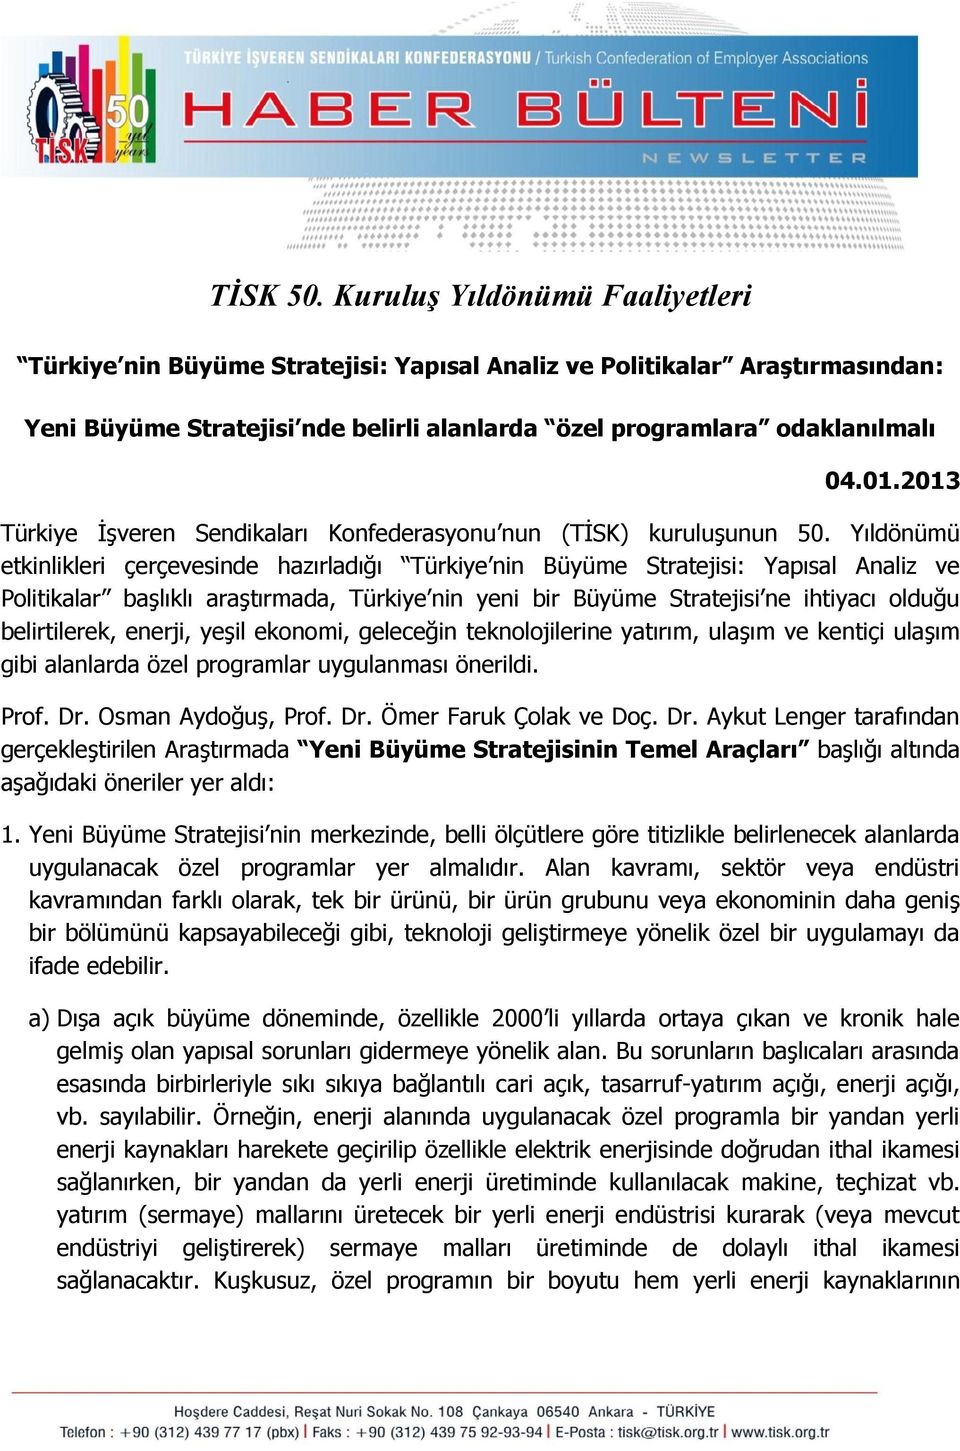 Yıldönümü etkinlikleri çerçevesinde hazırladığı Türkiye nin Büyüme Stratejisi: Yapısal Analiz ve Politikalar başlıklı araştırmada, Türkiye nin yeni bir Büyüme Stratejisi ne ihtiyacı olduğu